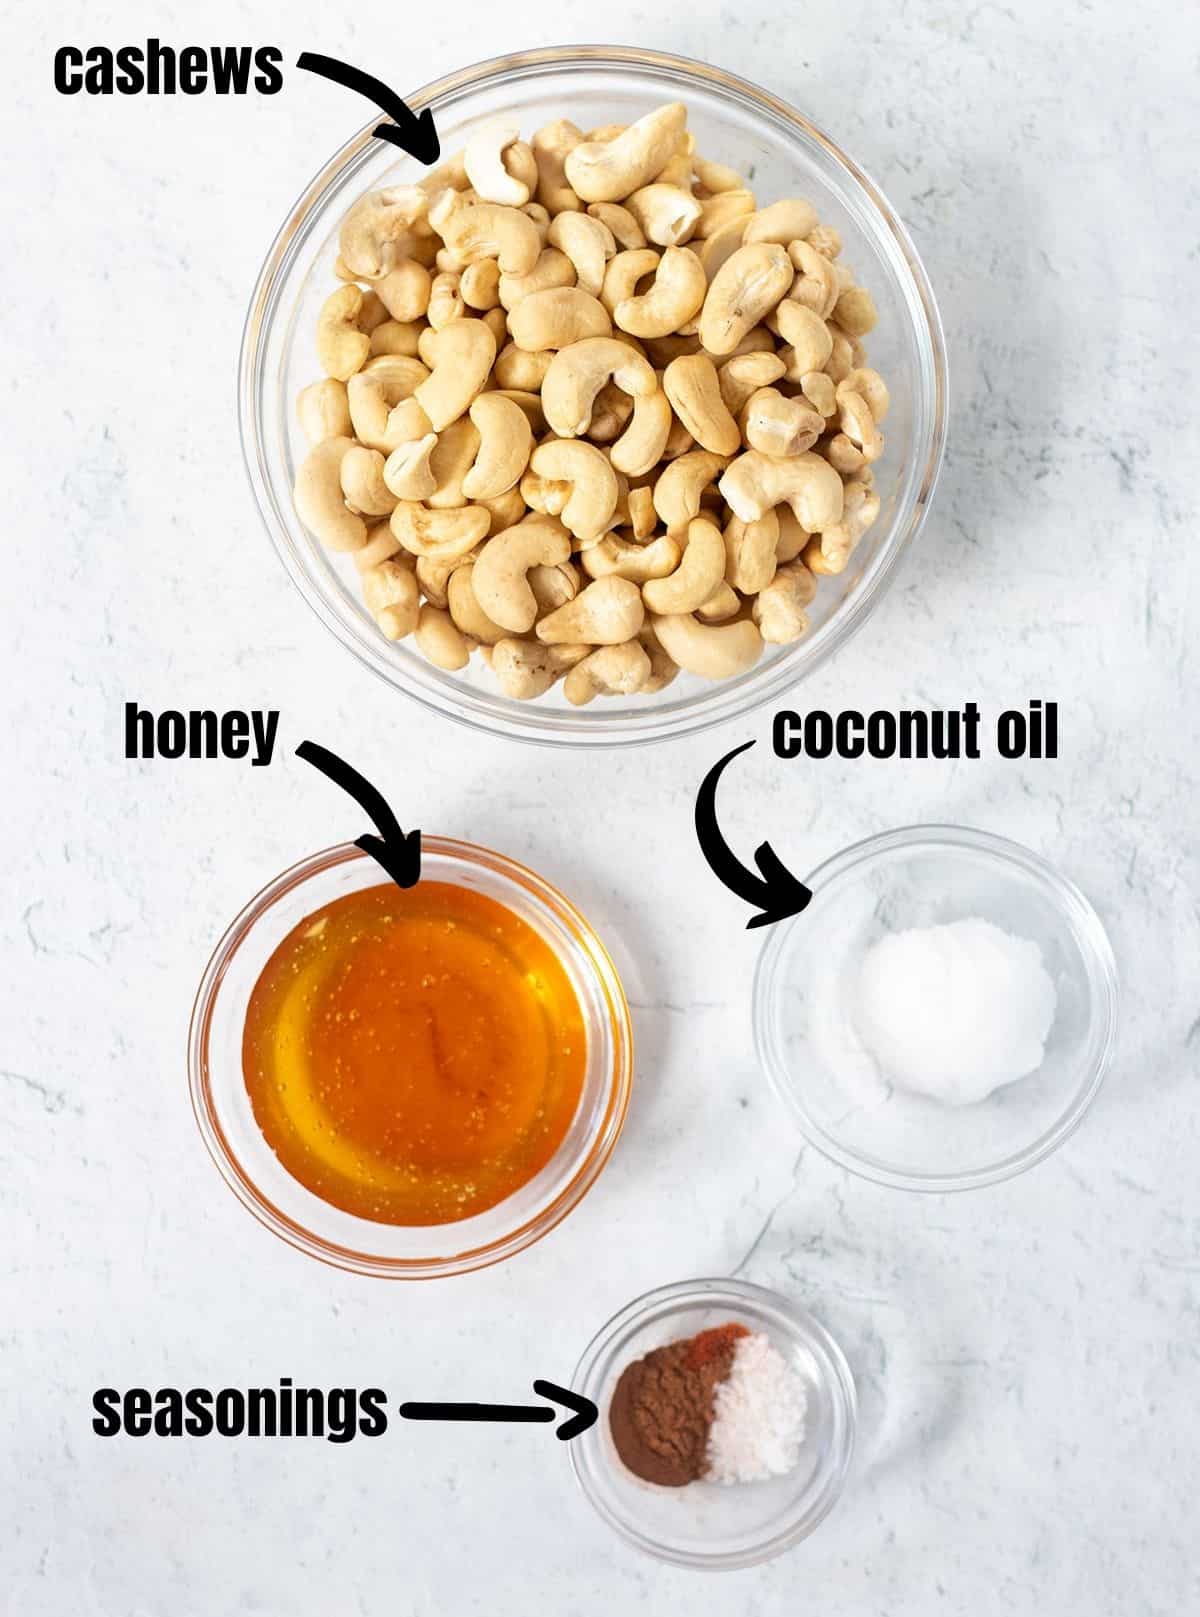 cashews, honey, coconut oil, seasonings for honey roasted cashews.